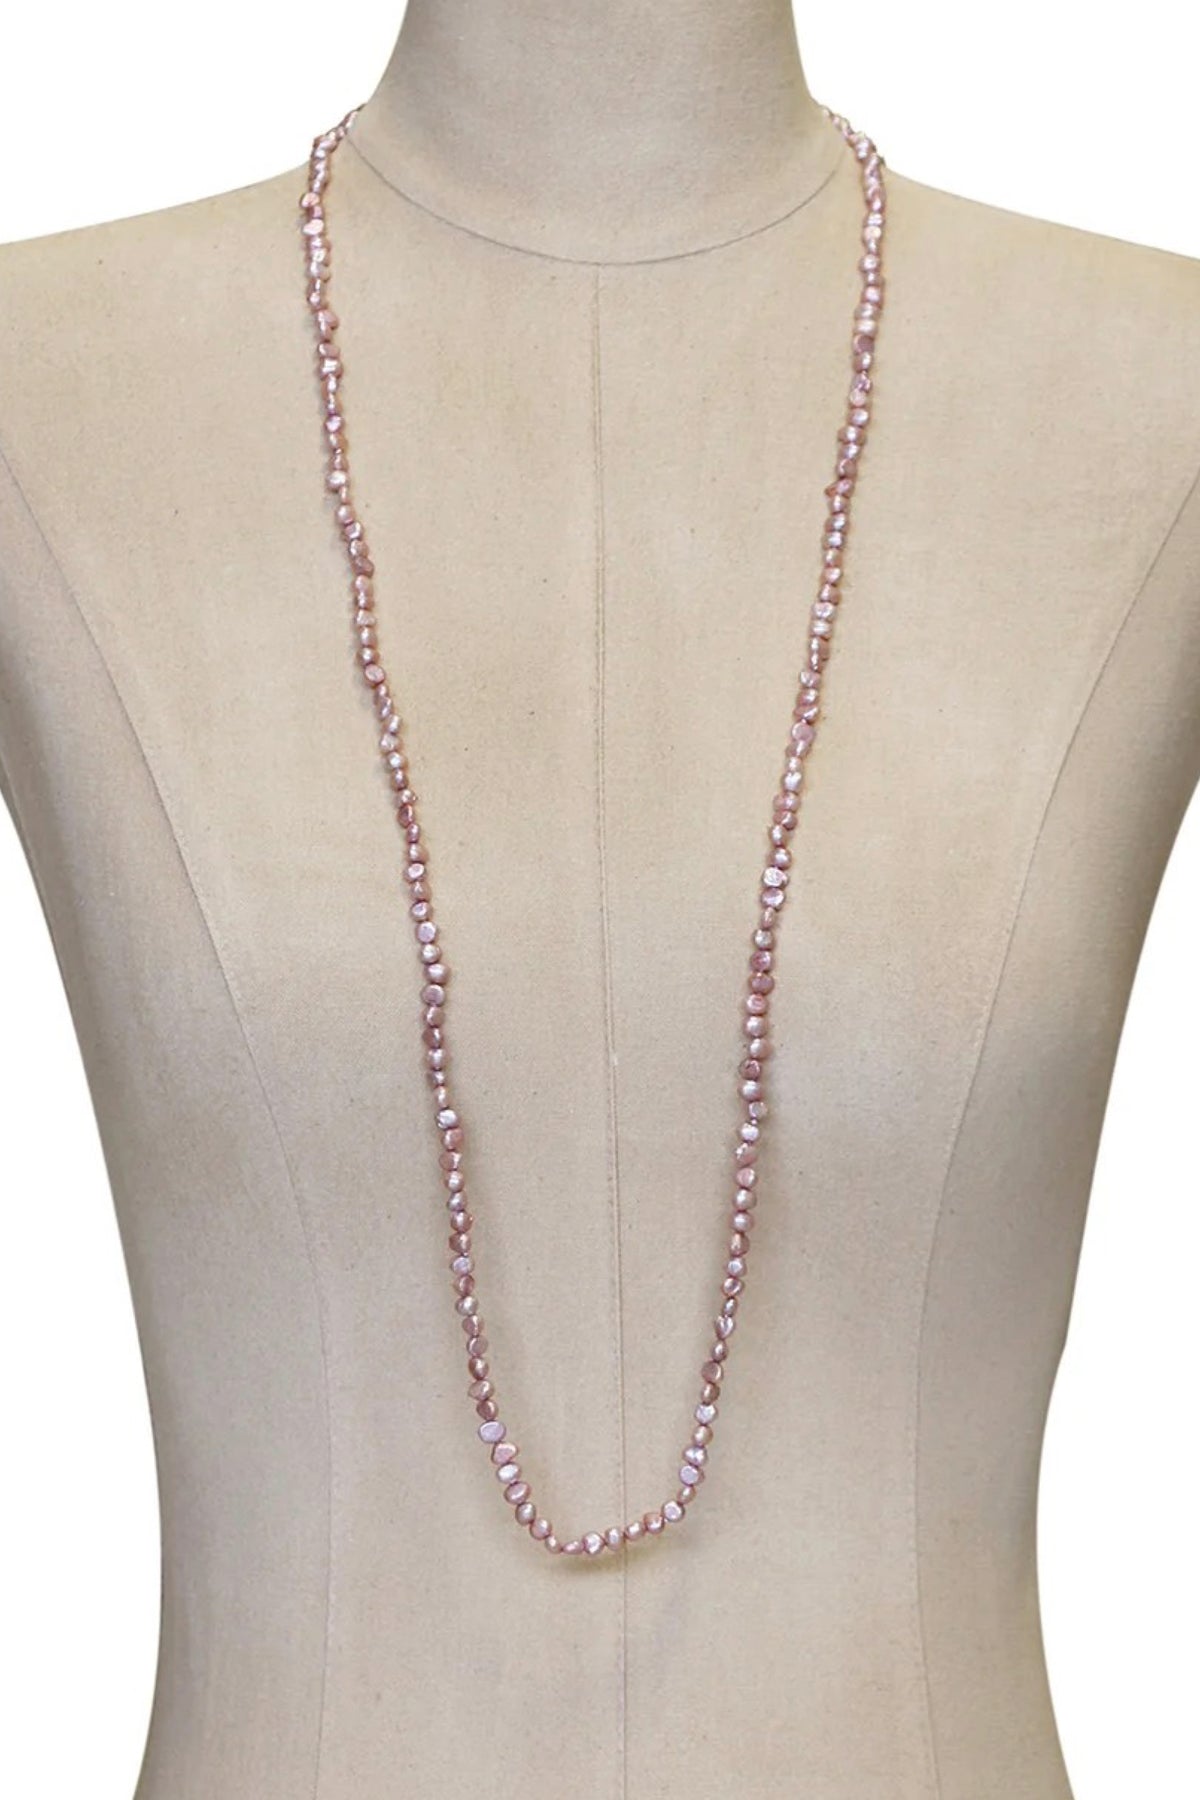 Baroque Pearl Necklace Lilac Medium